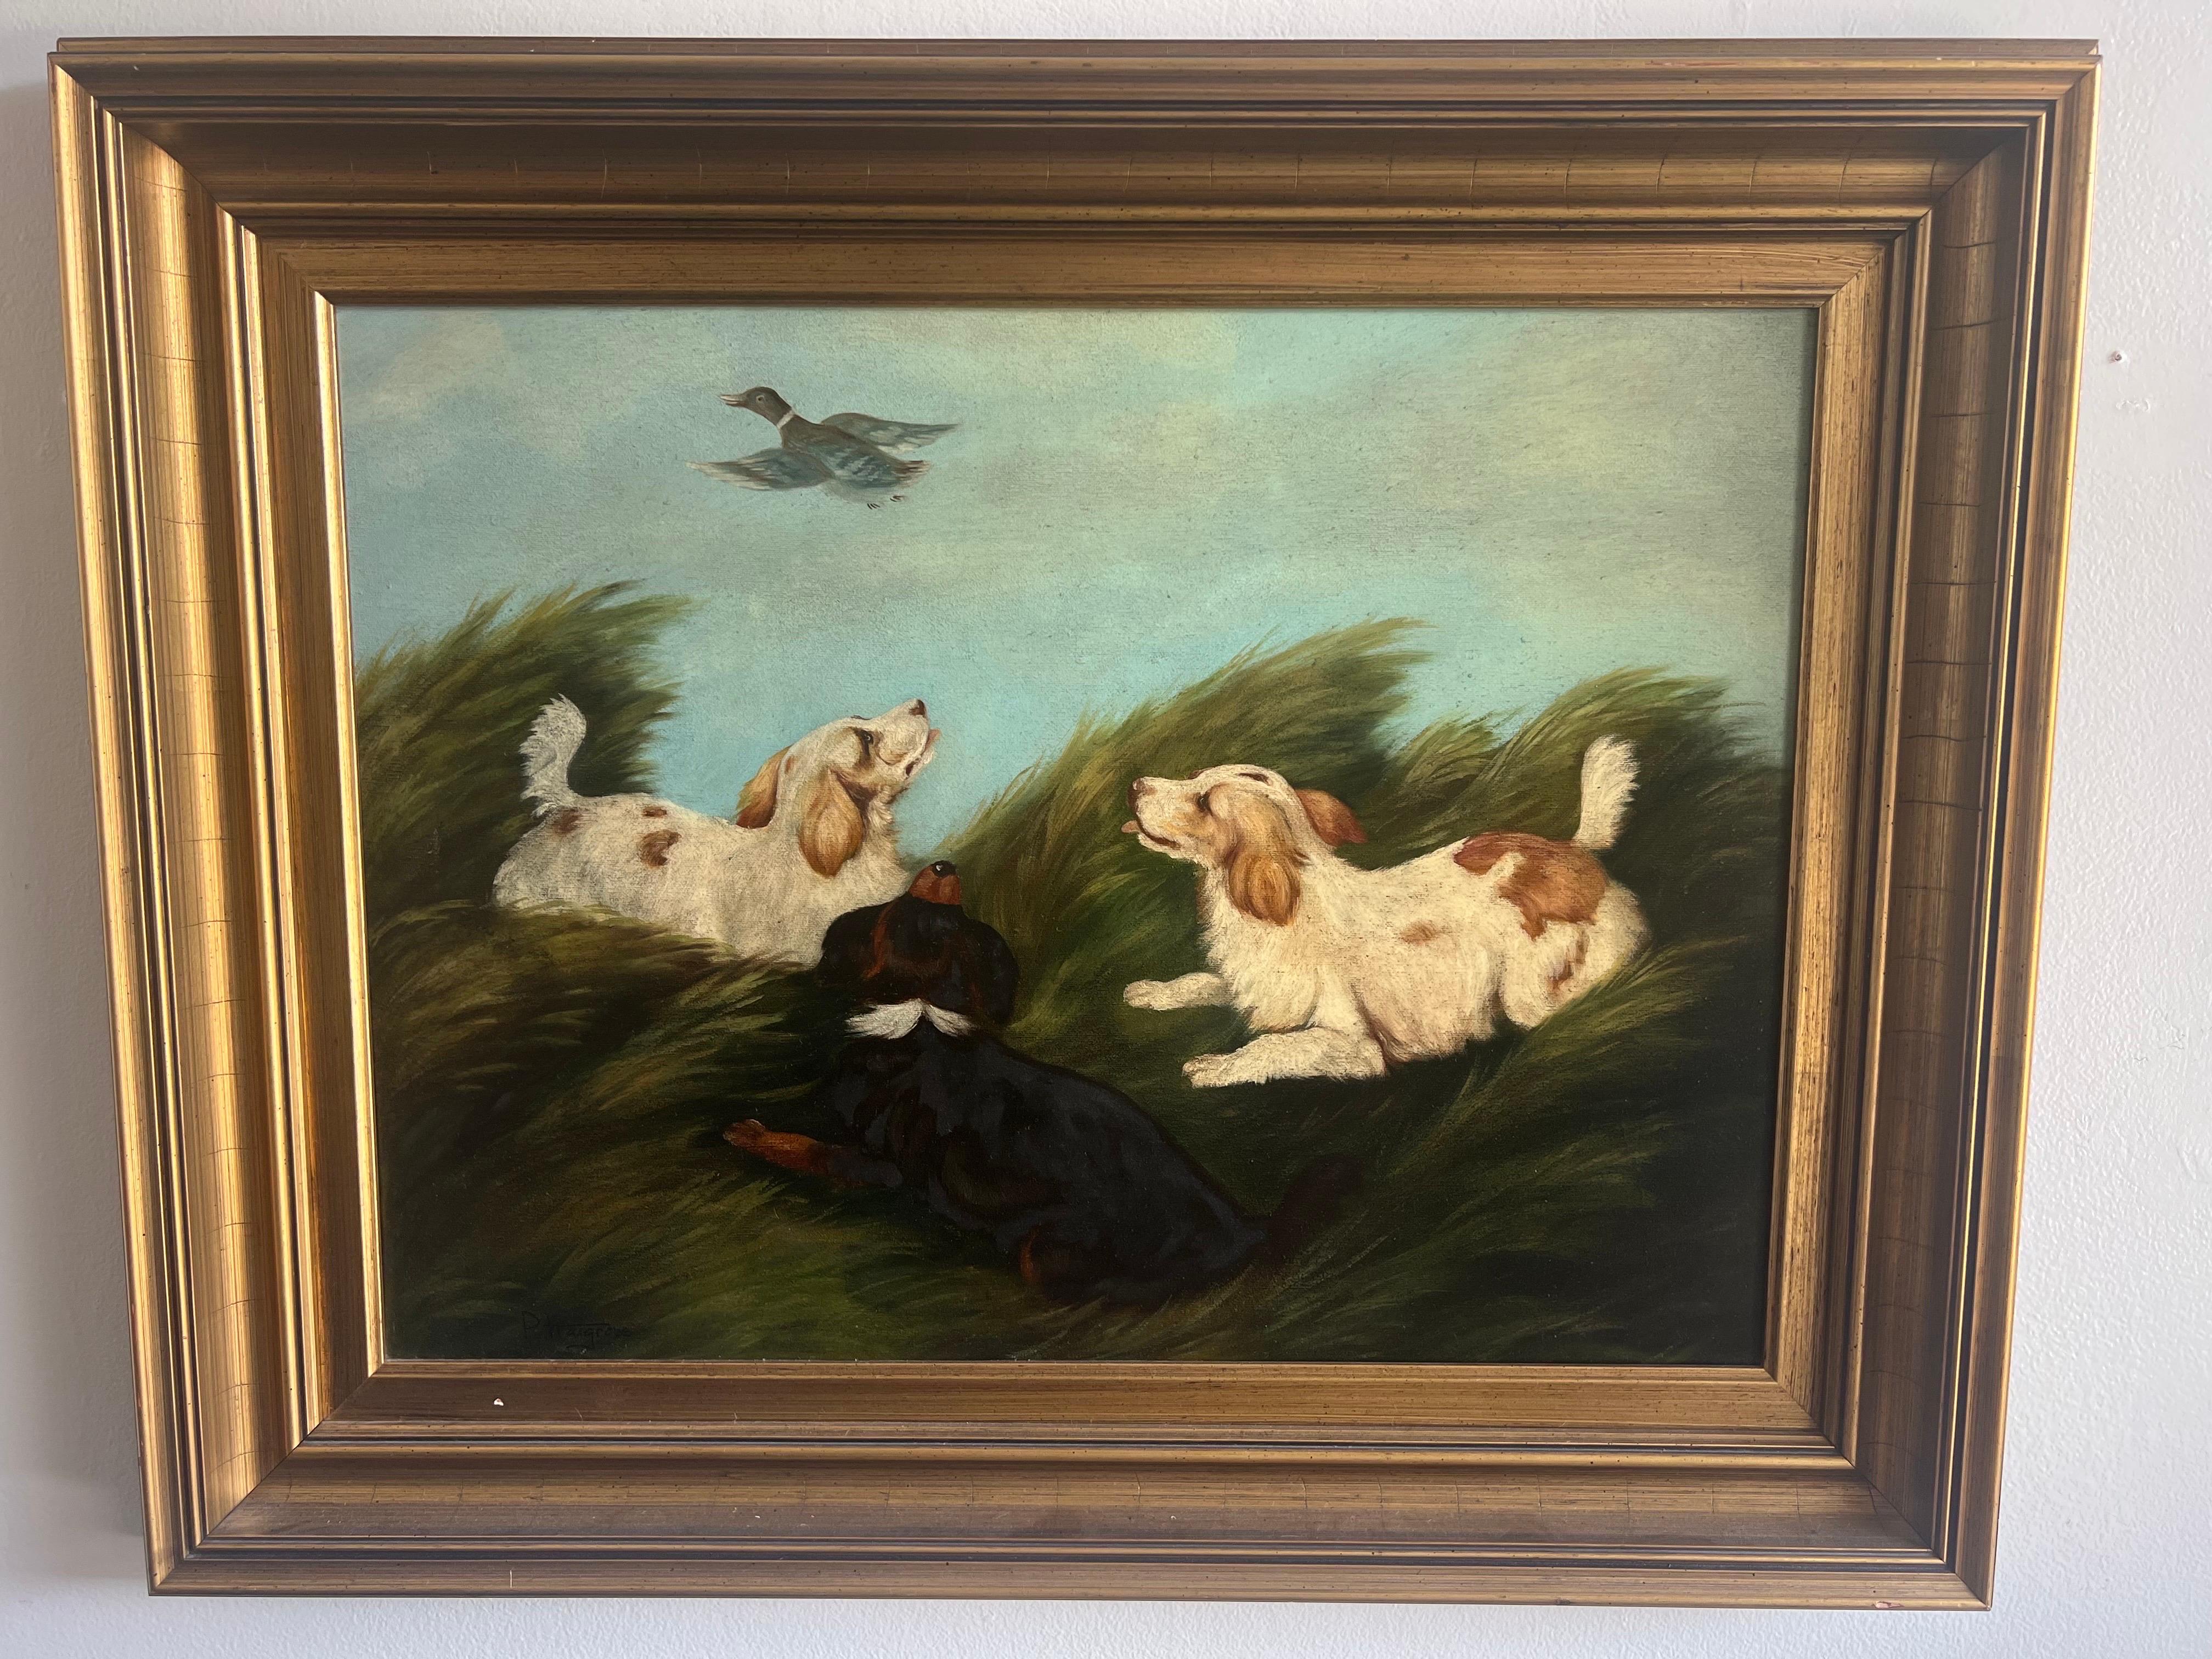 Charmante huile anglaise sur toile représentant trois épagneuls et un canard volant au-dessus de leur tête.  Signé P. Hargrove.  Cadre doré d'origine.